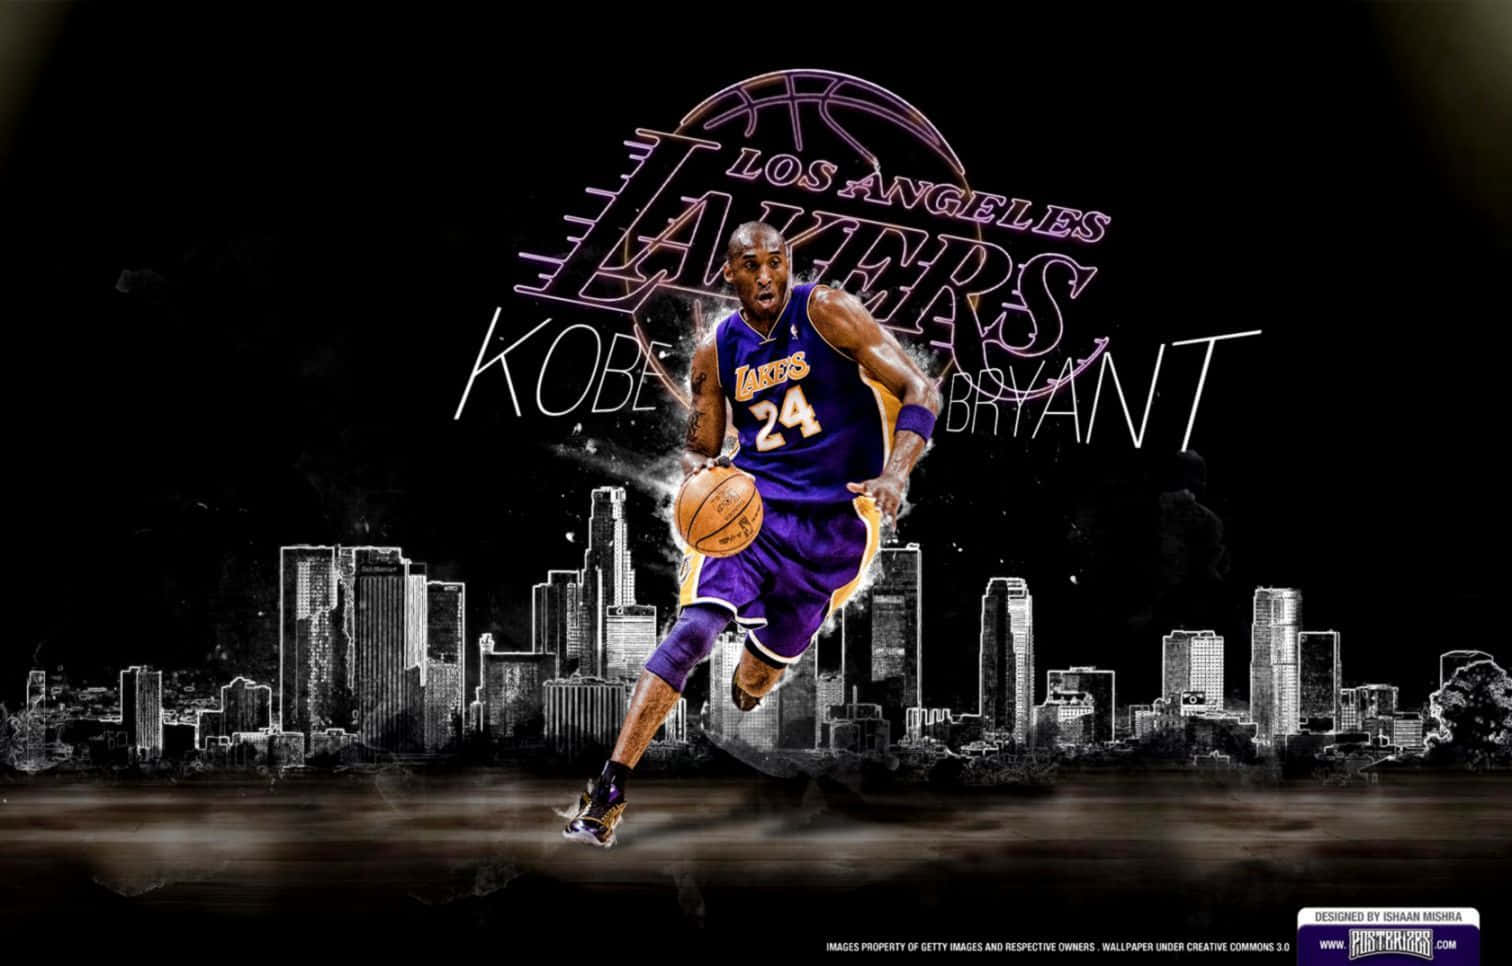 Legendariskbasketballspiller Kobe Bryant.